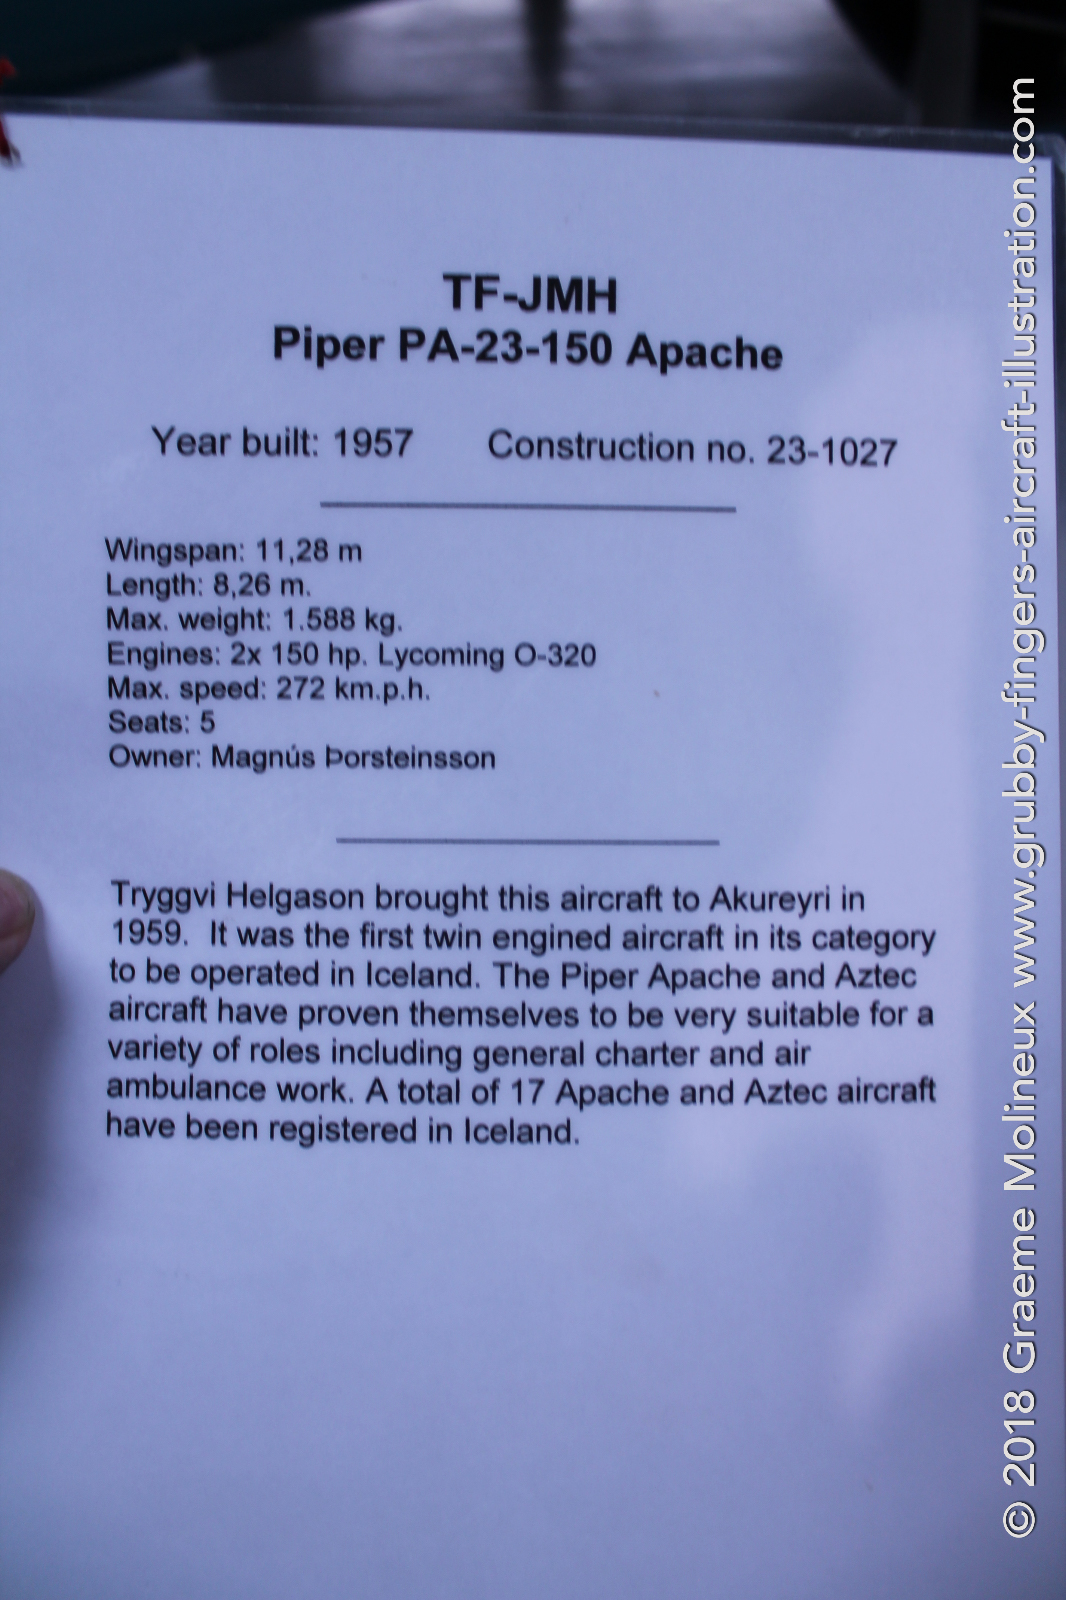 Piper%20PA-23%20Apache%20TF-JMH%20Iceland%202017%20003%20Graeme%20Molineux